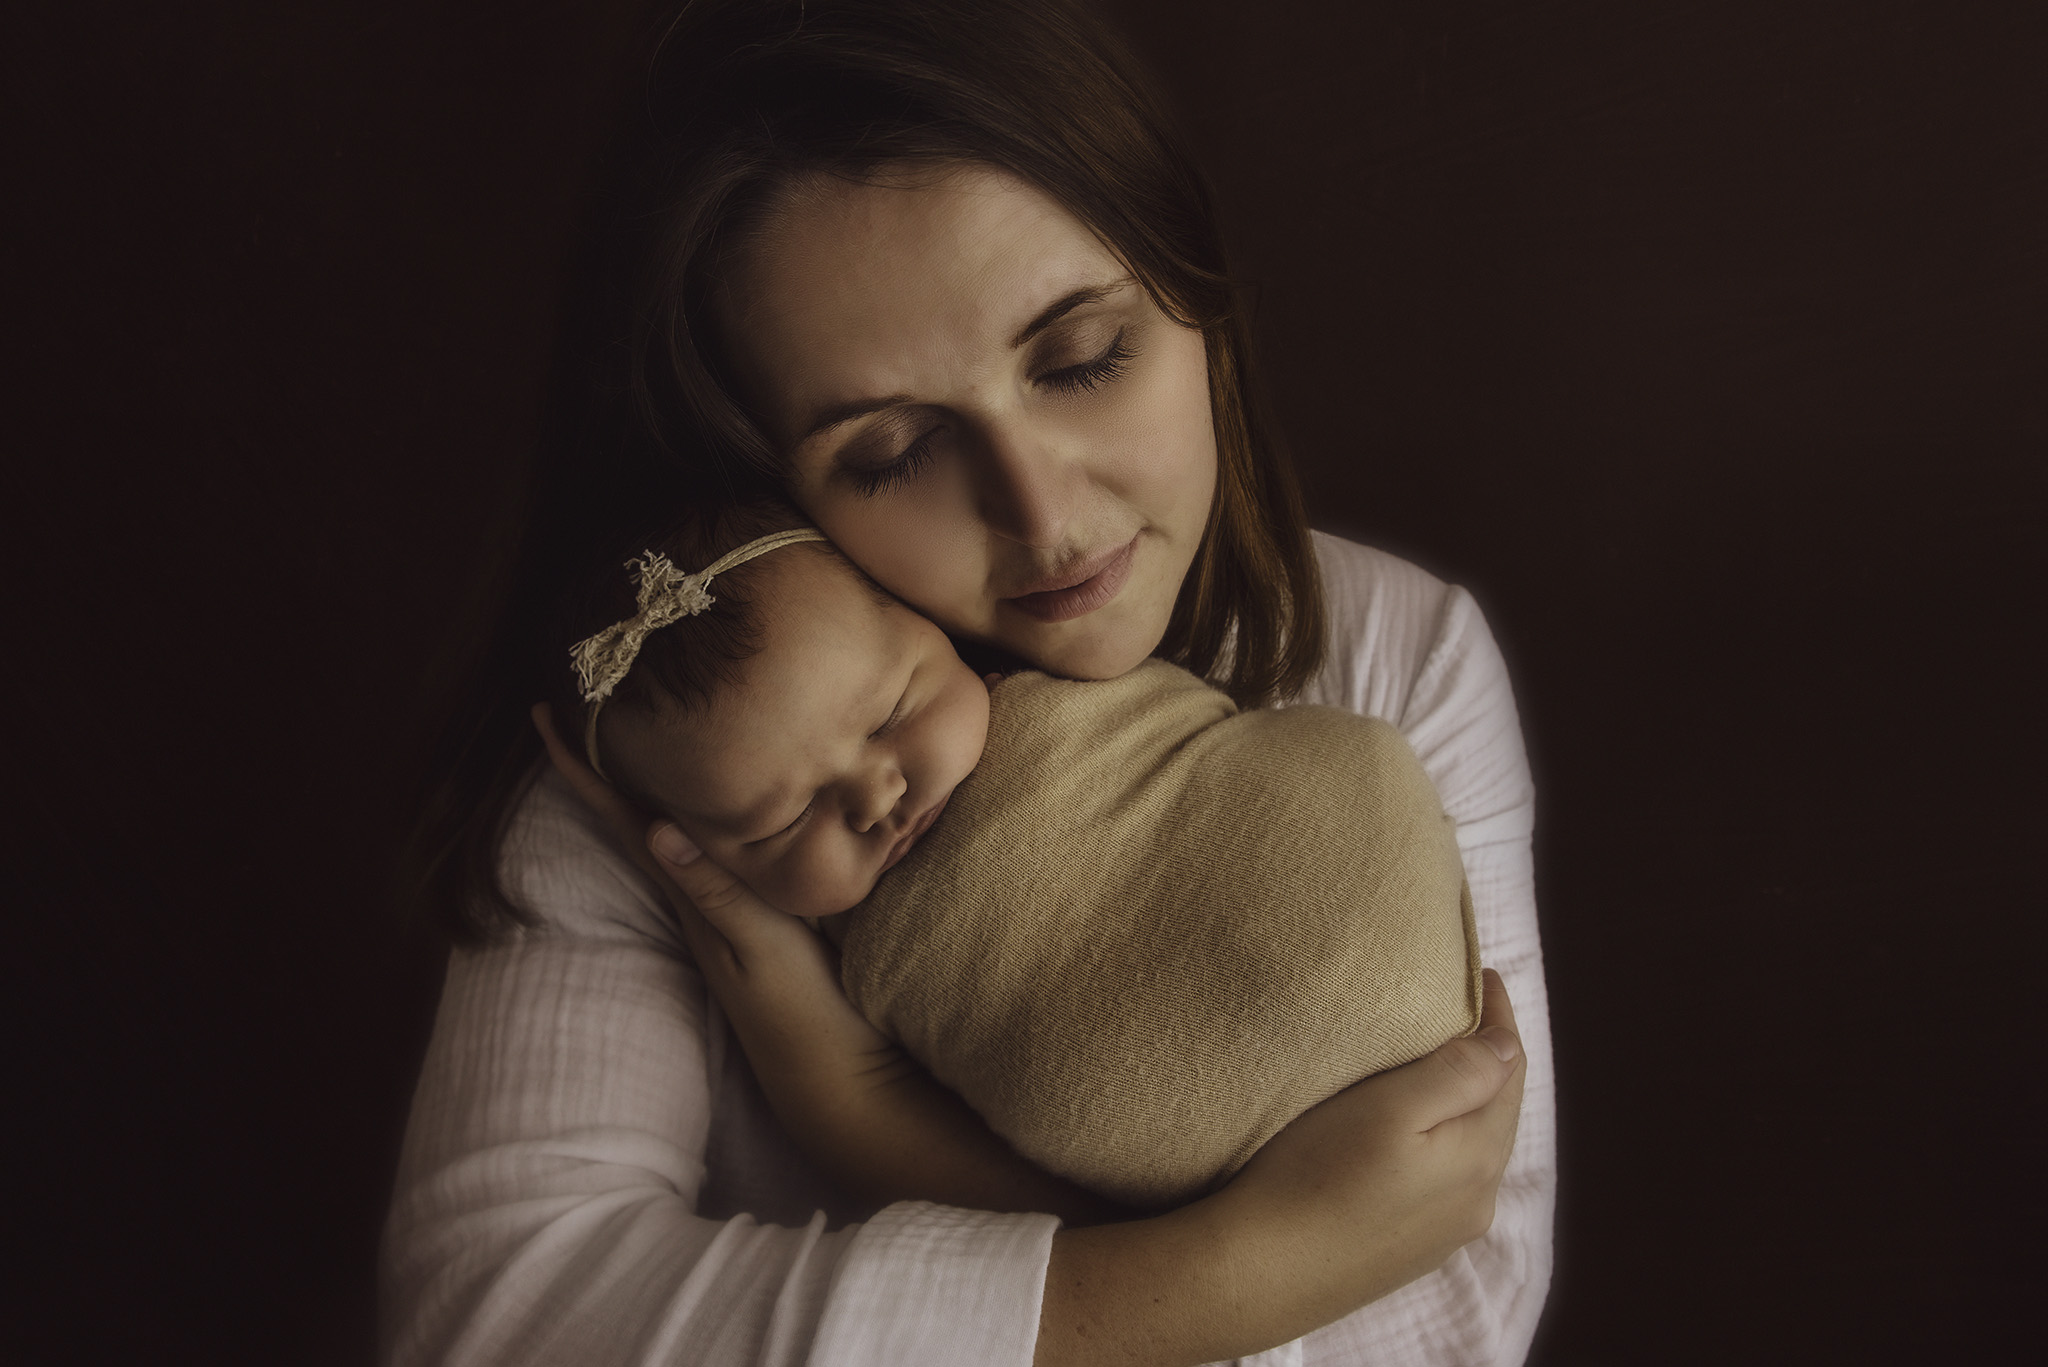 séance naissance - portrait parent - maman - formation photographe nouveau-né - workshop - newborn - One Moment Photographie - 544 copie